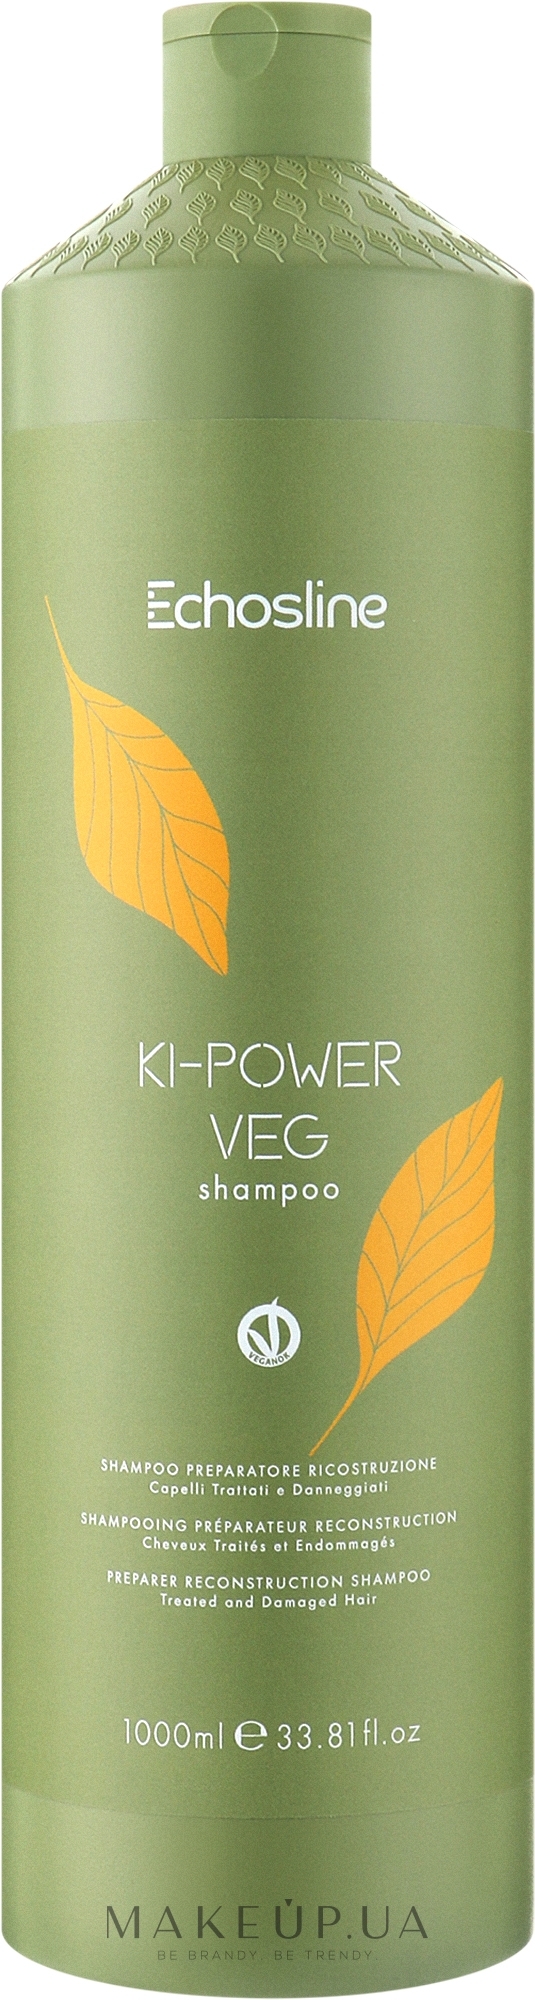 Відновлювальний шампунь для волосся - Echosline Ki-Power Veg Shampoo — фото 1000ml